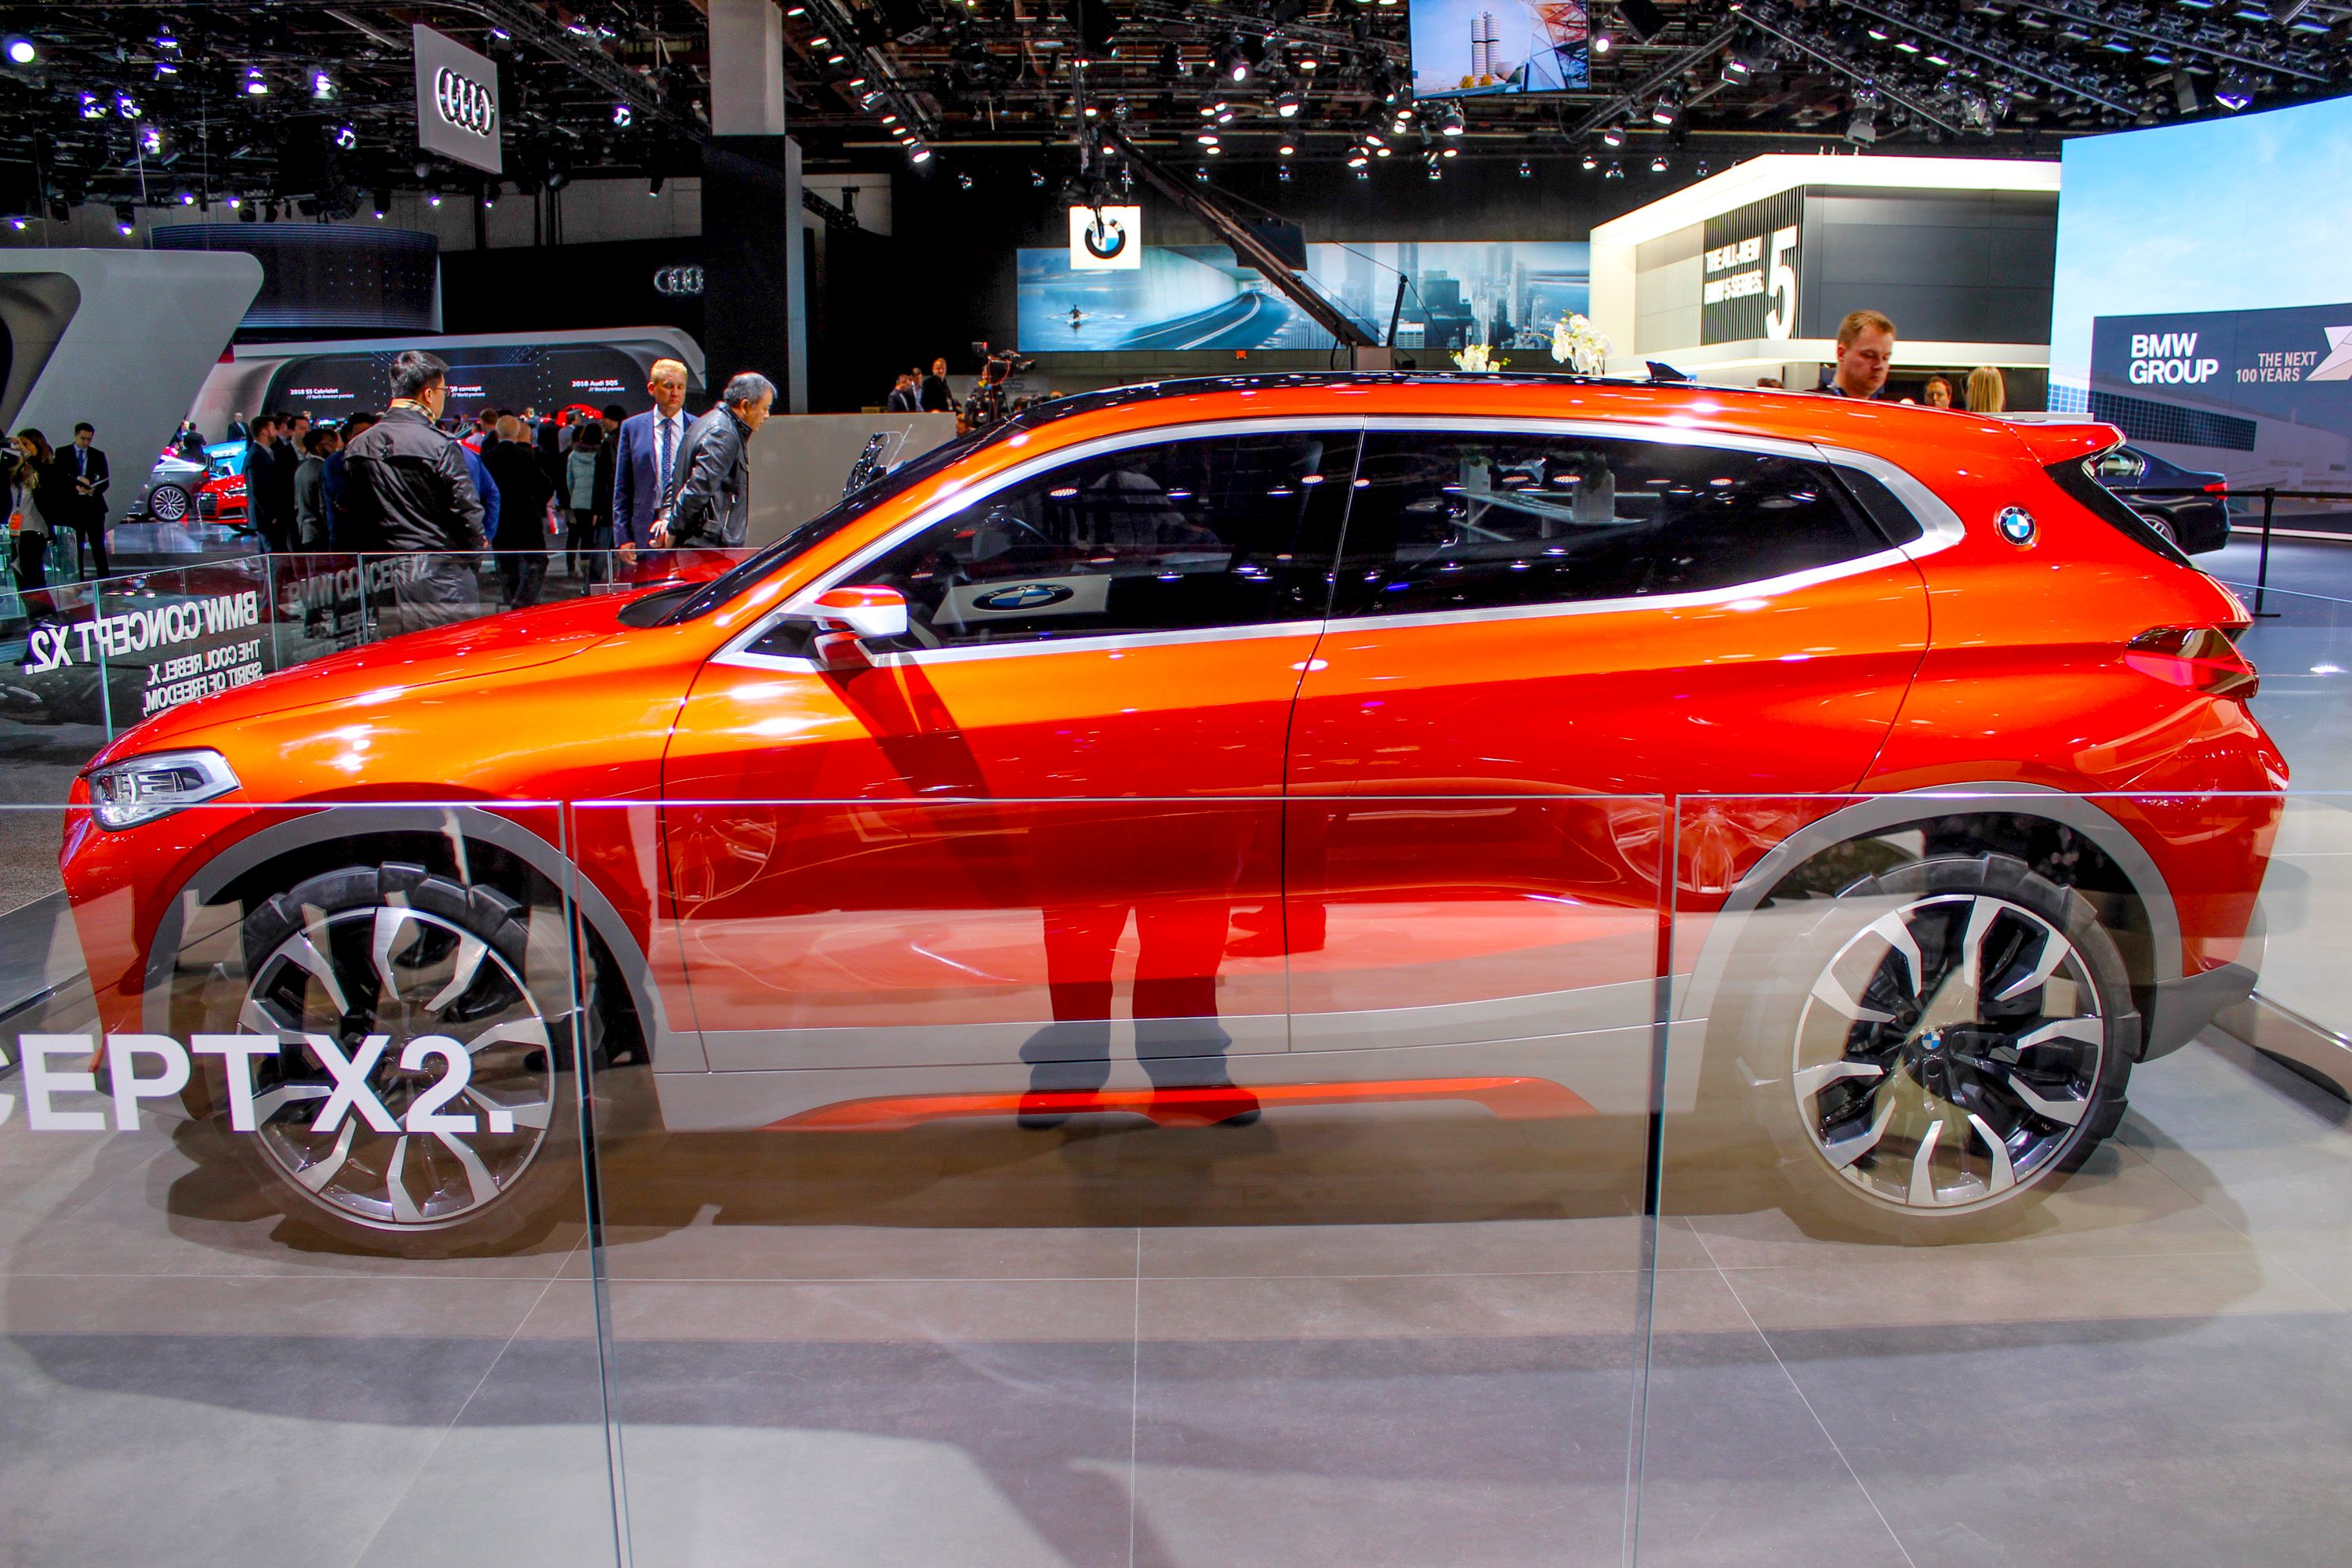 2016 BMW X2 Concept